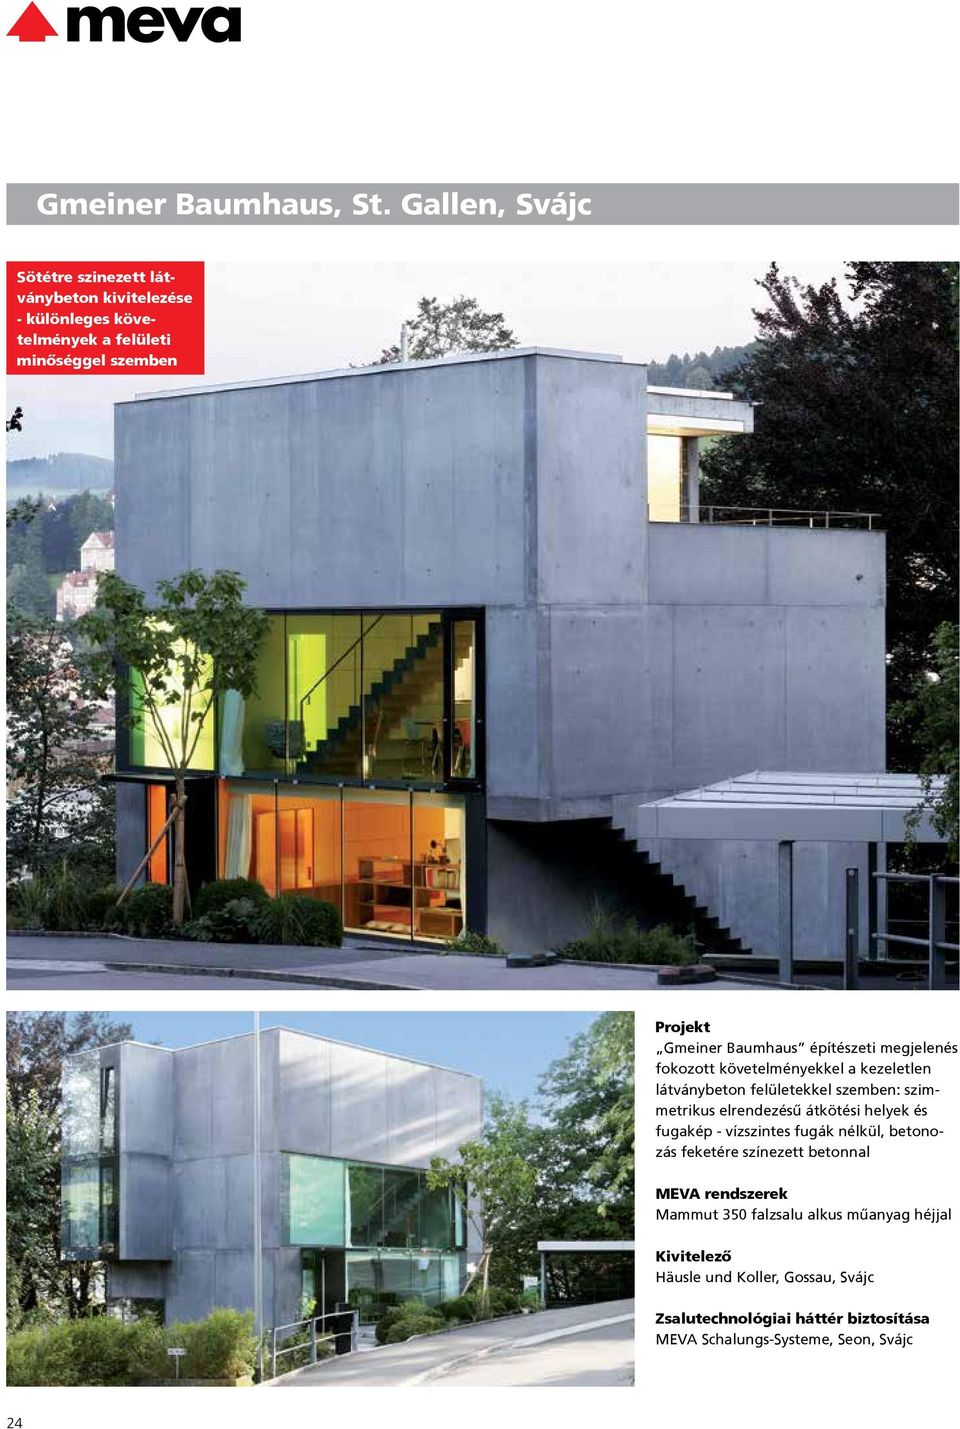 Baumhaus építészeti megjelenés fokozott követelményekkel a kezeletlen látványbeton felületekkel szemben: szimmetrikus